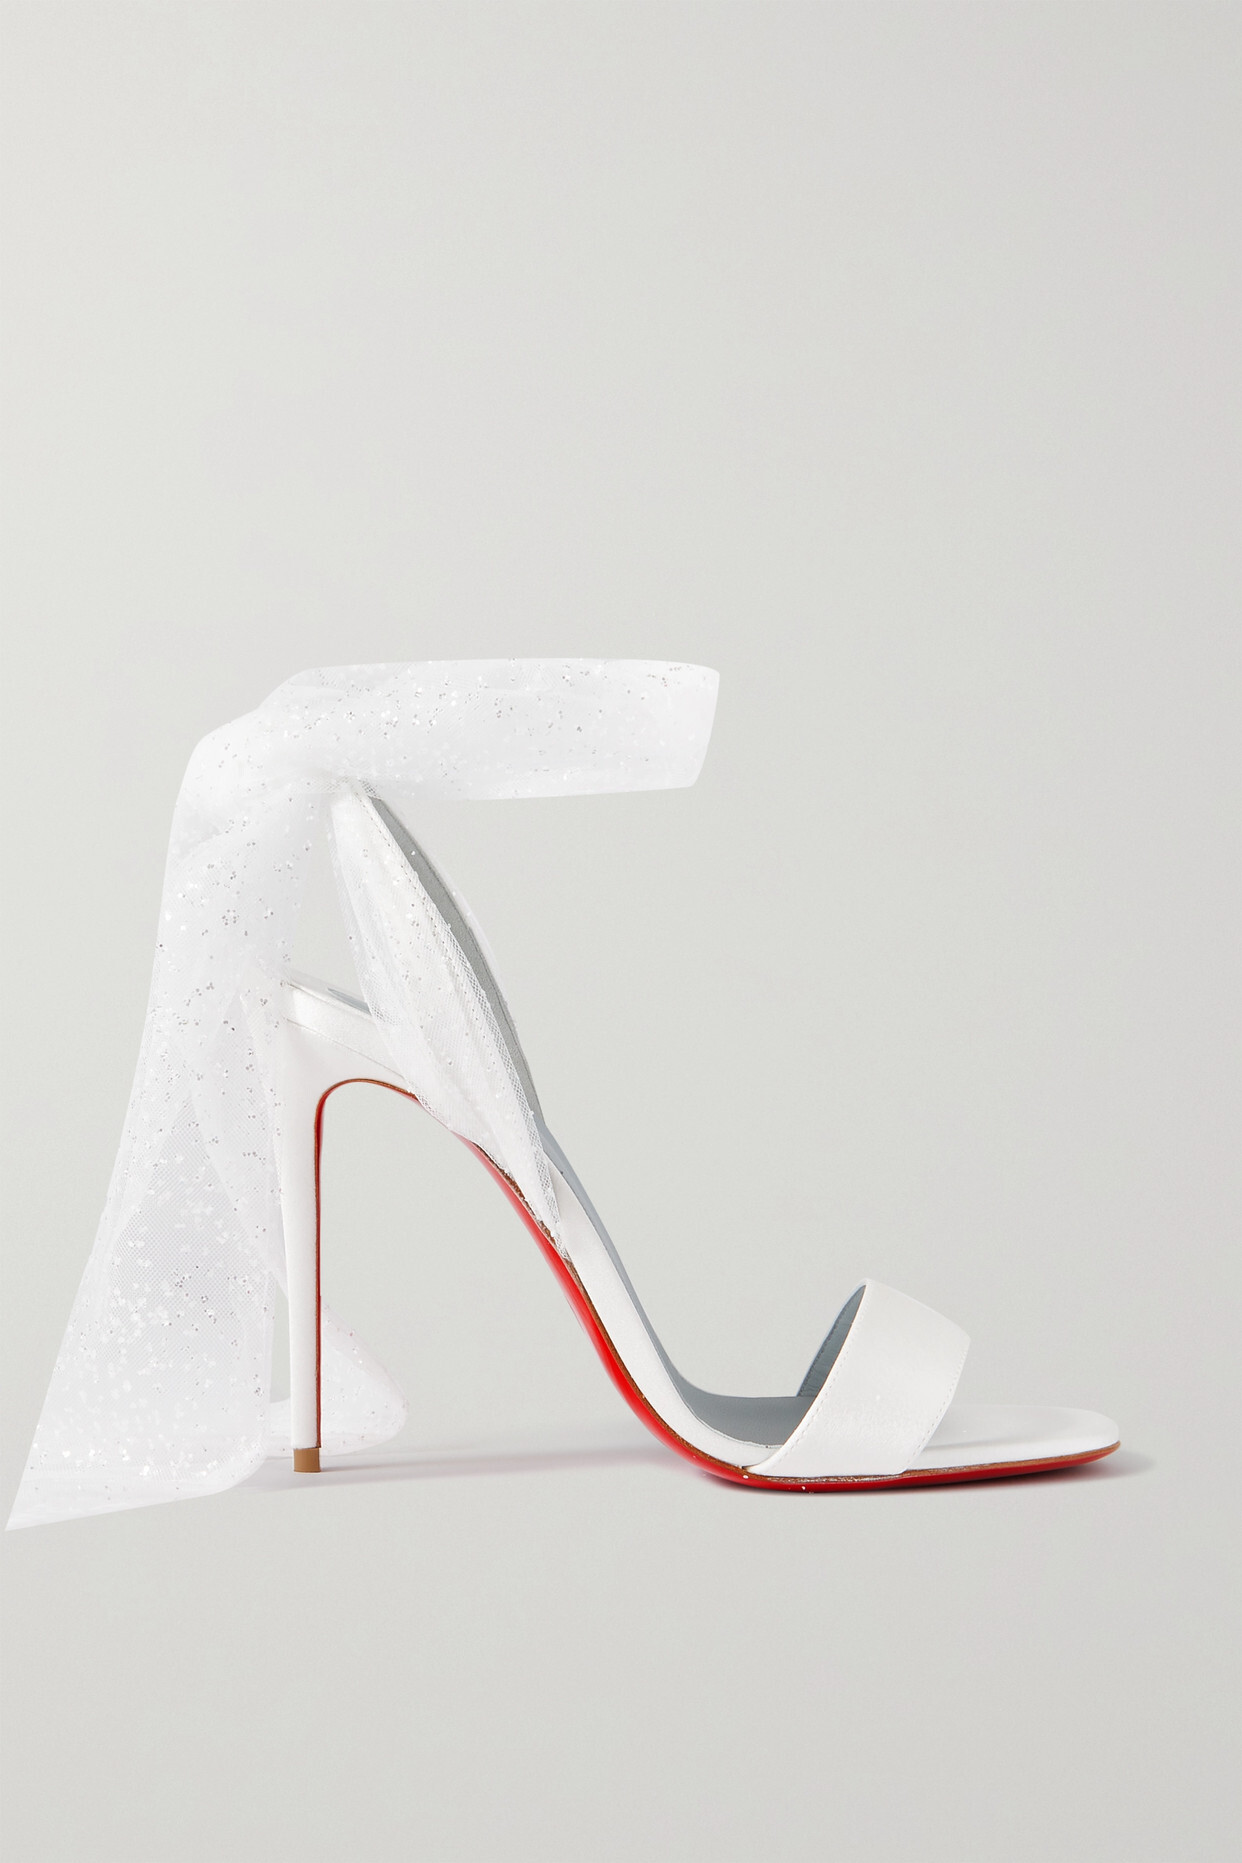 Christian Louboutin - Desert 100 Satin And Glittered Tulle Sandals - White